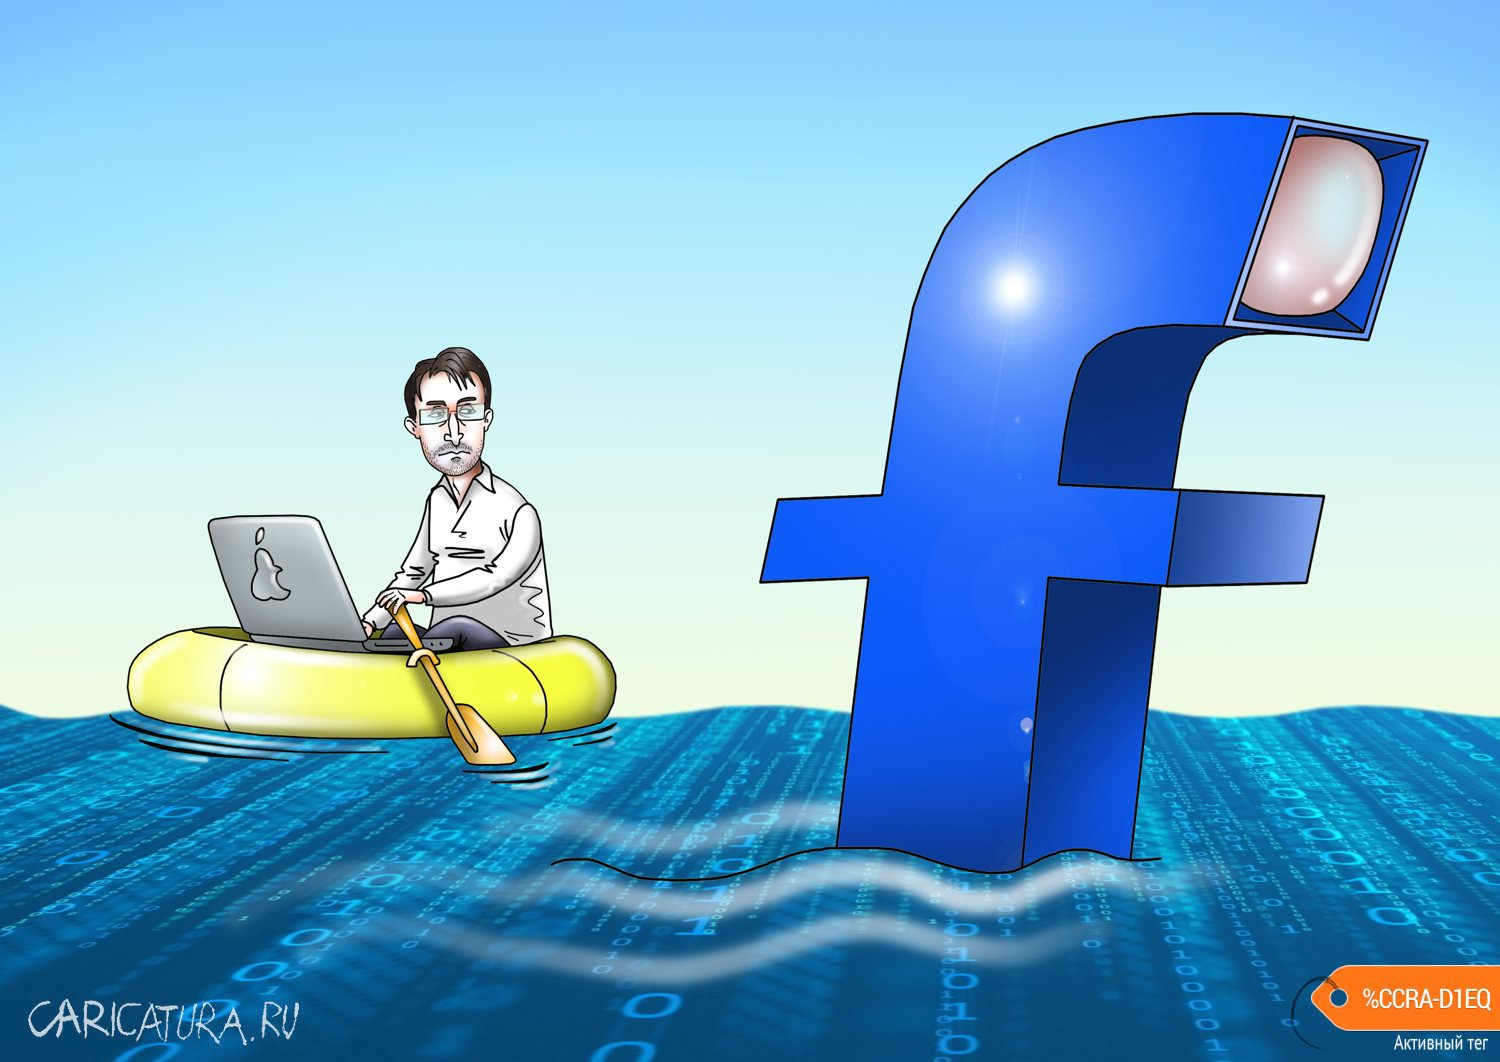 Карикатура "Facebook тоже занимается слежкой", Сергей Корсун